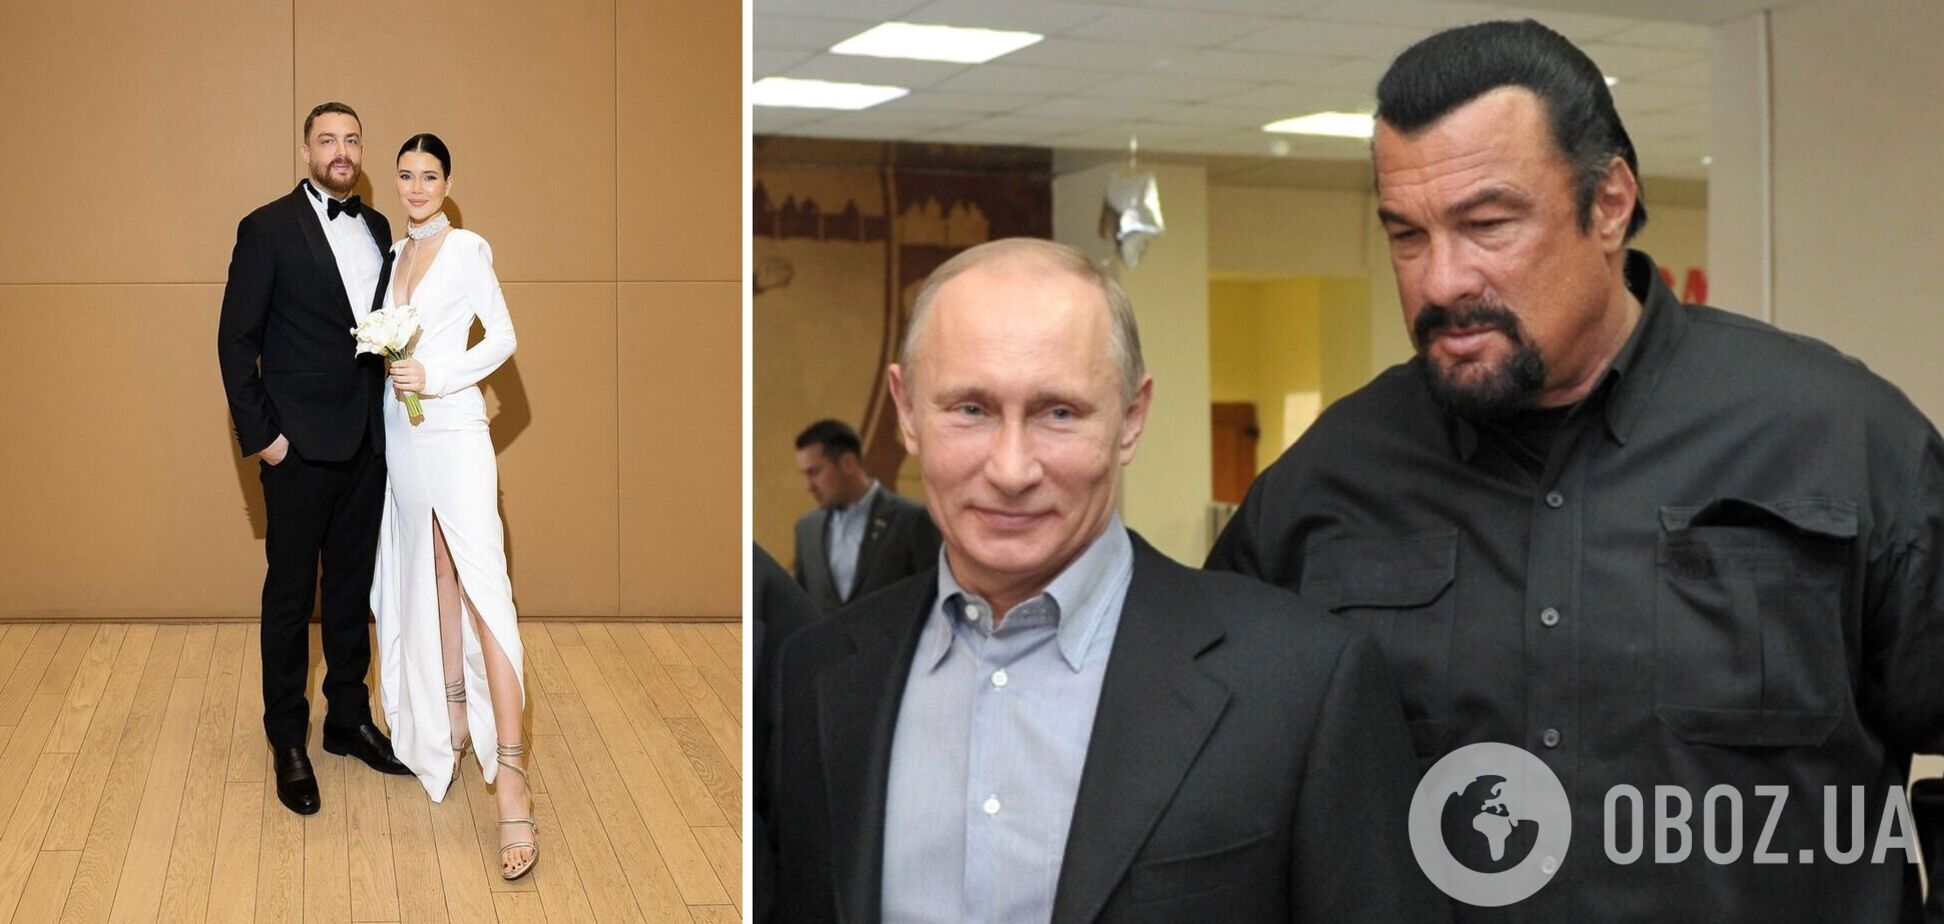 Син актора-путініста Стівена Сігала одружився з російською моделлю: весілля пройшло в Москві. Фото